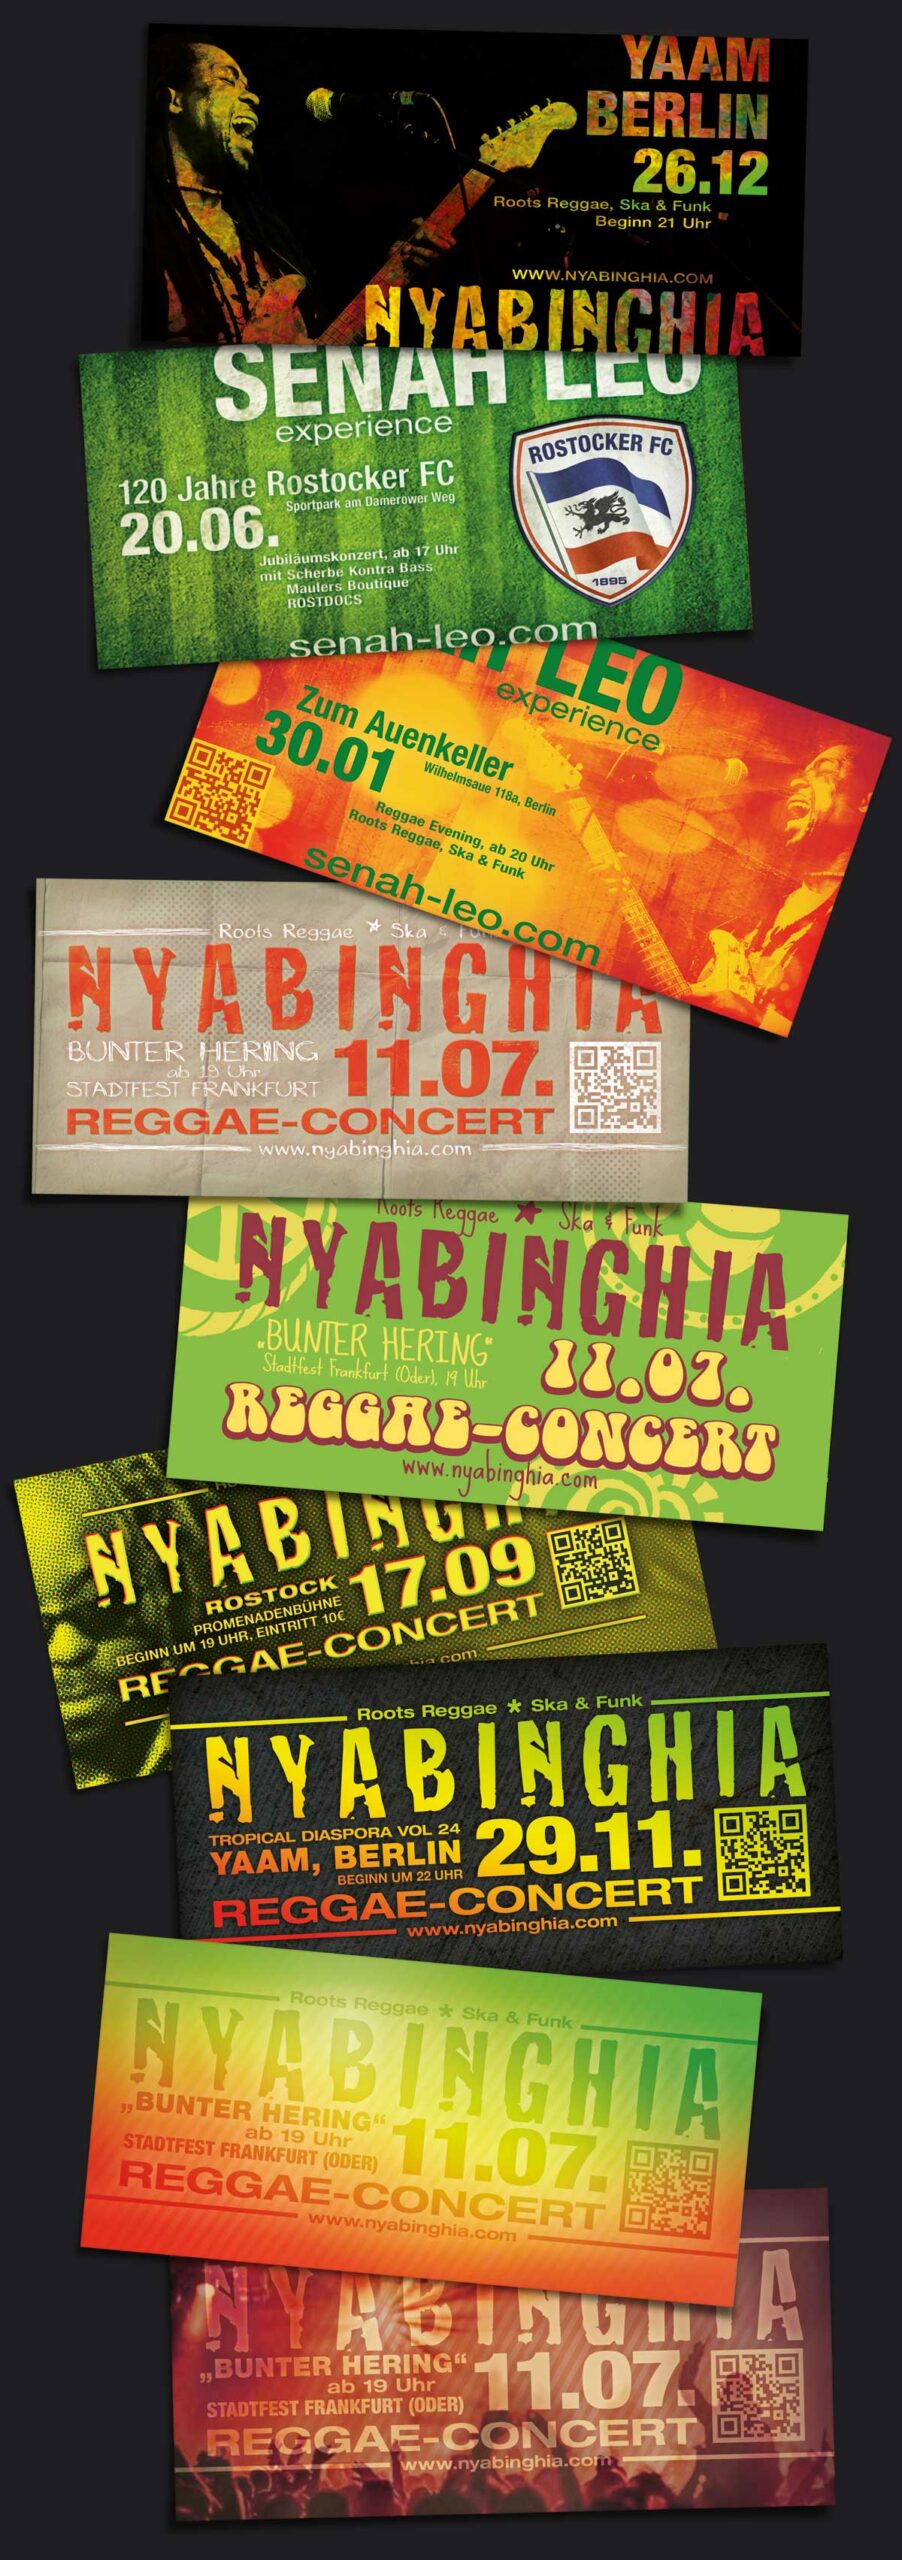 Diverse Reggea-Konzert-Flyer in den Farbtönen gelb, grün, orange und schwarz gehalten.